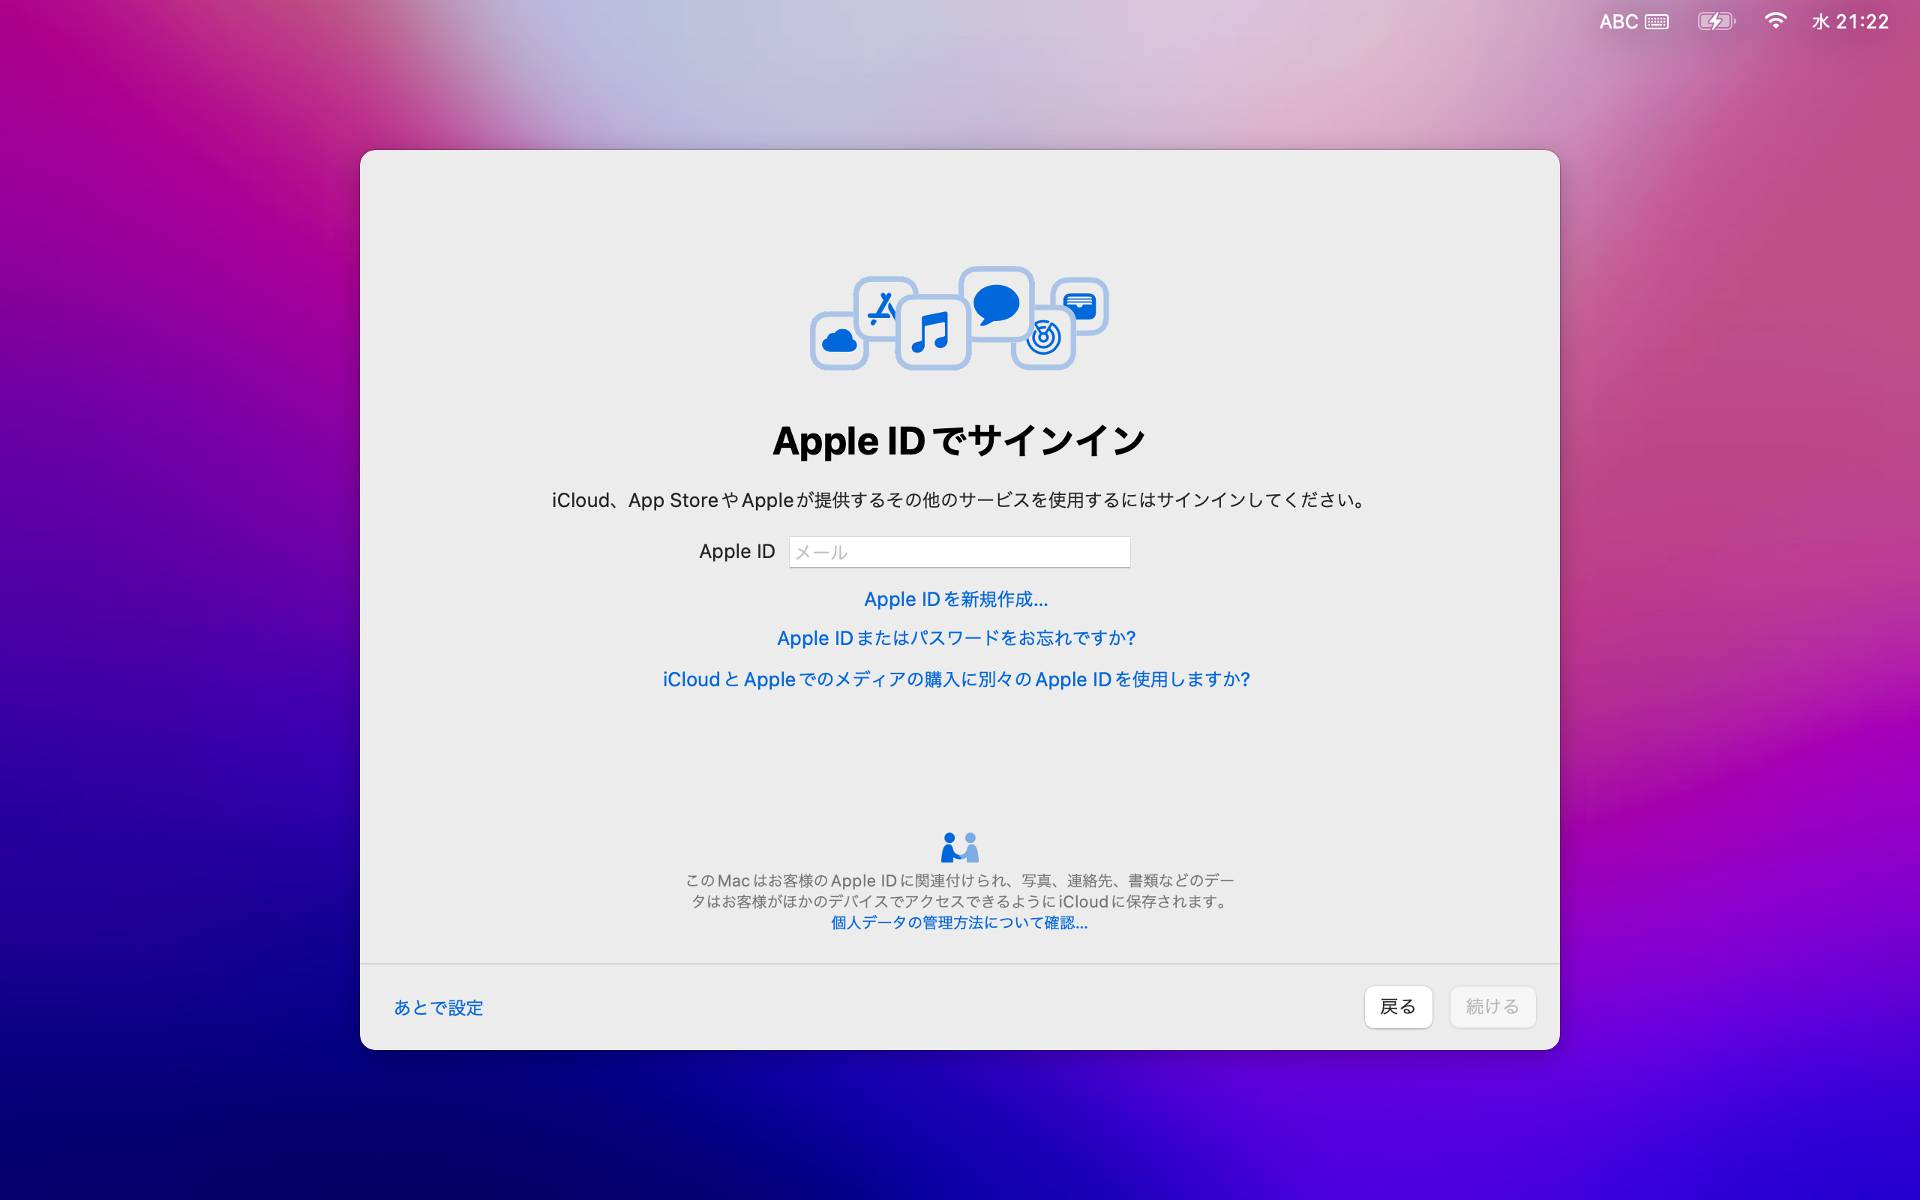 【Mac】macOSをHigh SierraからMontereyにアップグレード